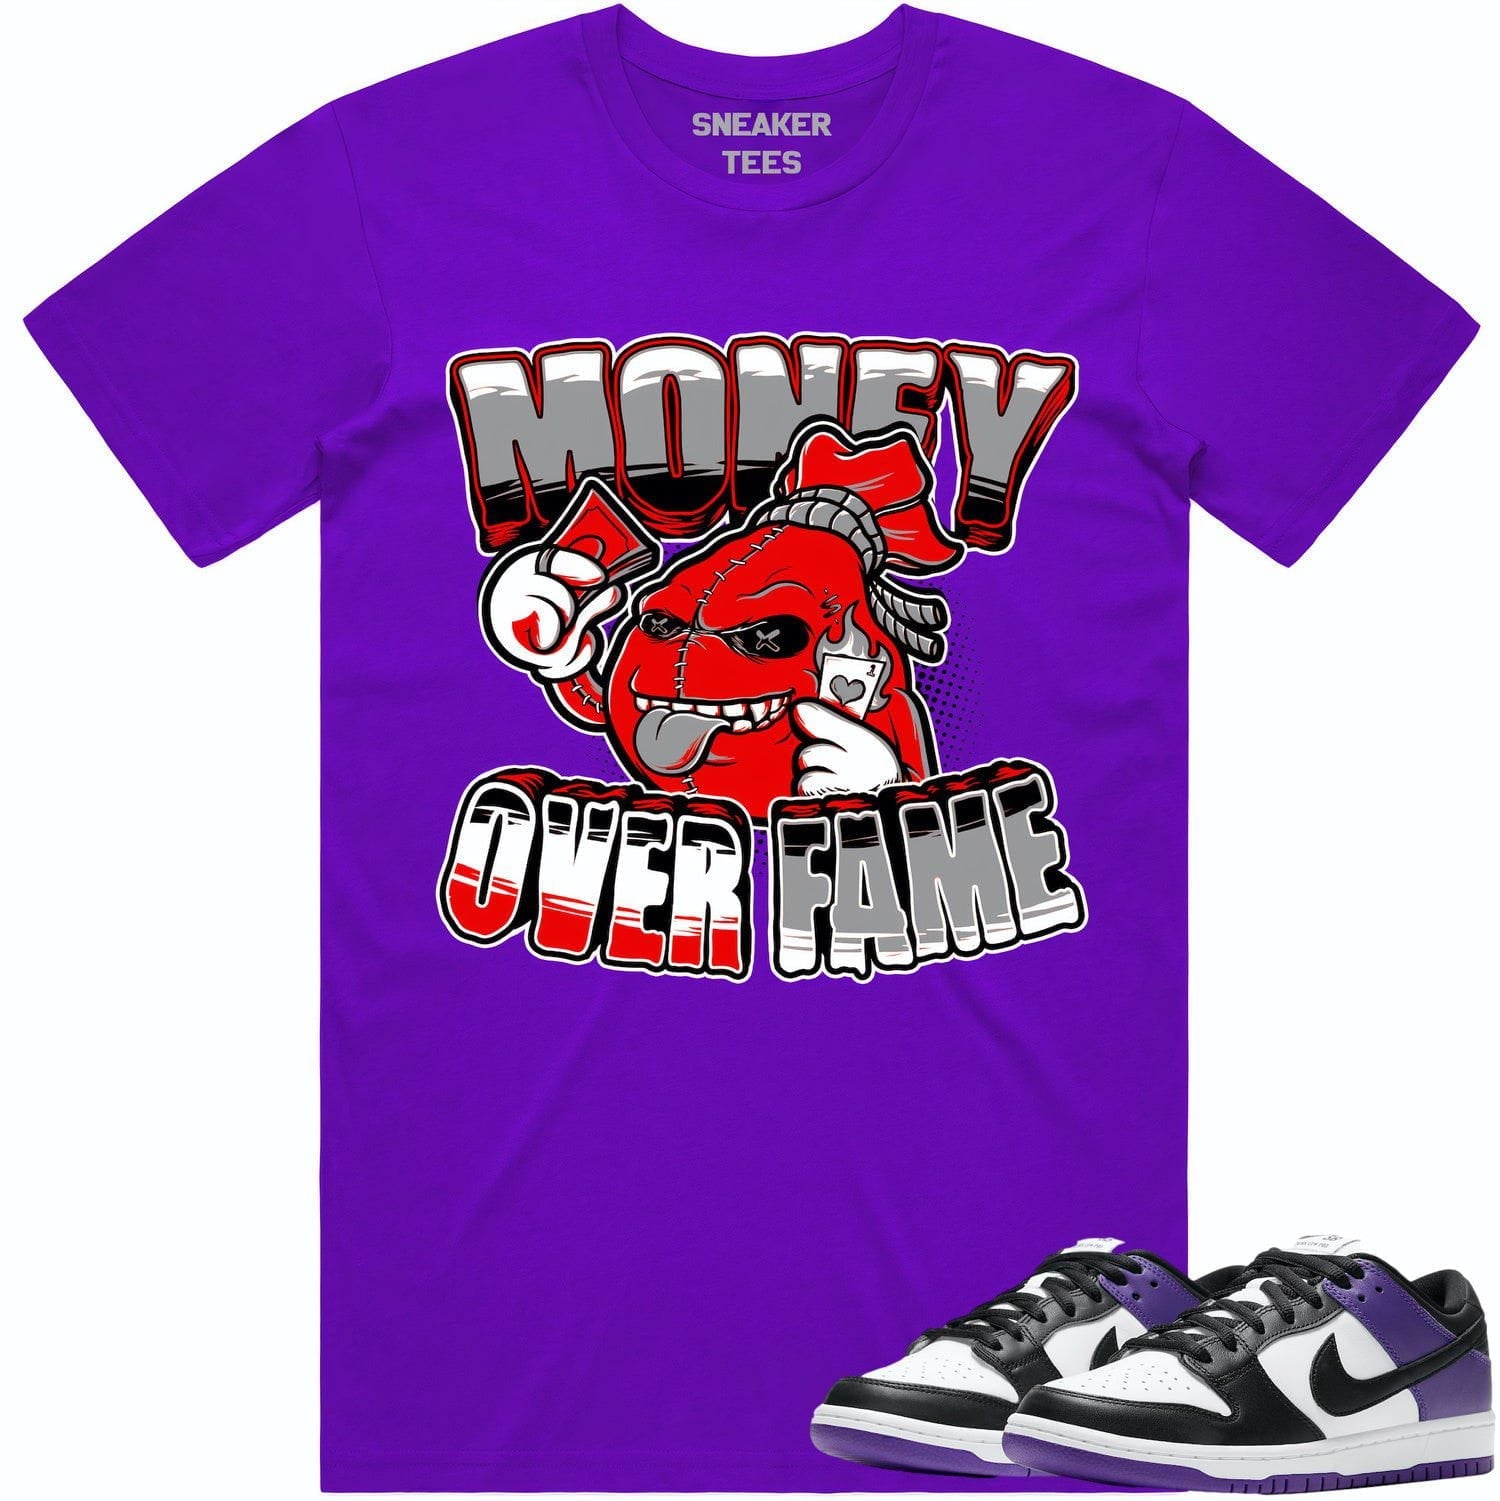 Court Purple Dunks Shirt - Dunks Sneaker Tees - Money Over Fame